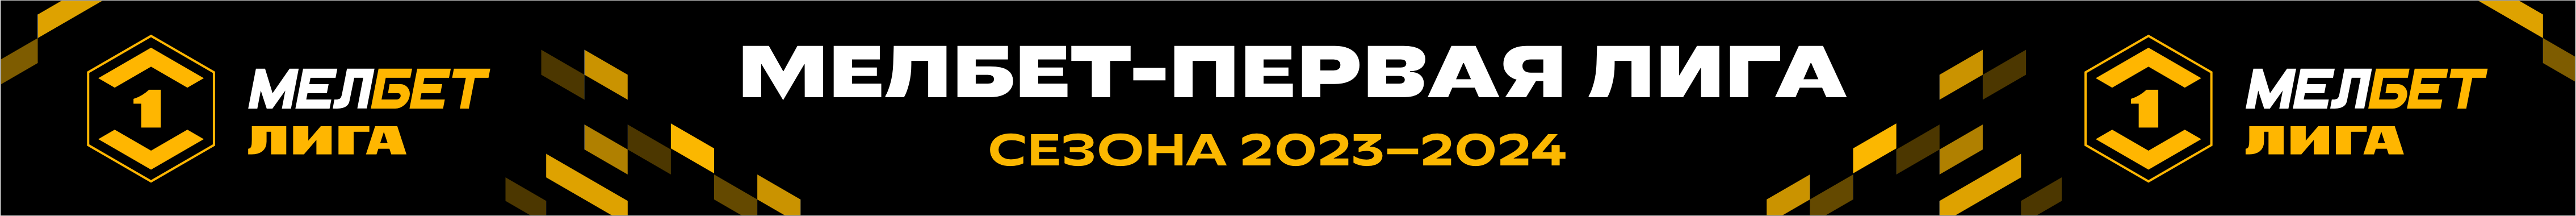 Мелбет первая лига 2023 24 таблица. Мелбет 1 лига. Мелбет первая лига логотип. Эмблема Мелбет 1 лига. Мелбет первая лига 2023-2024.